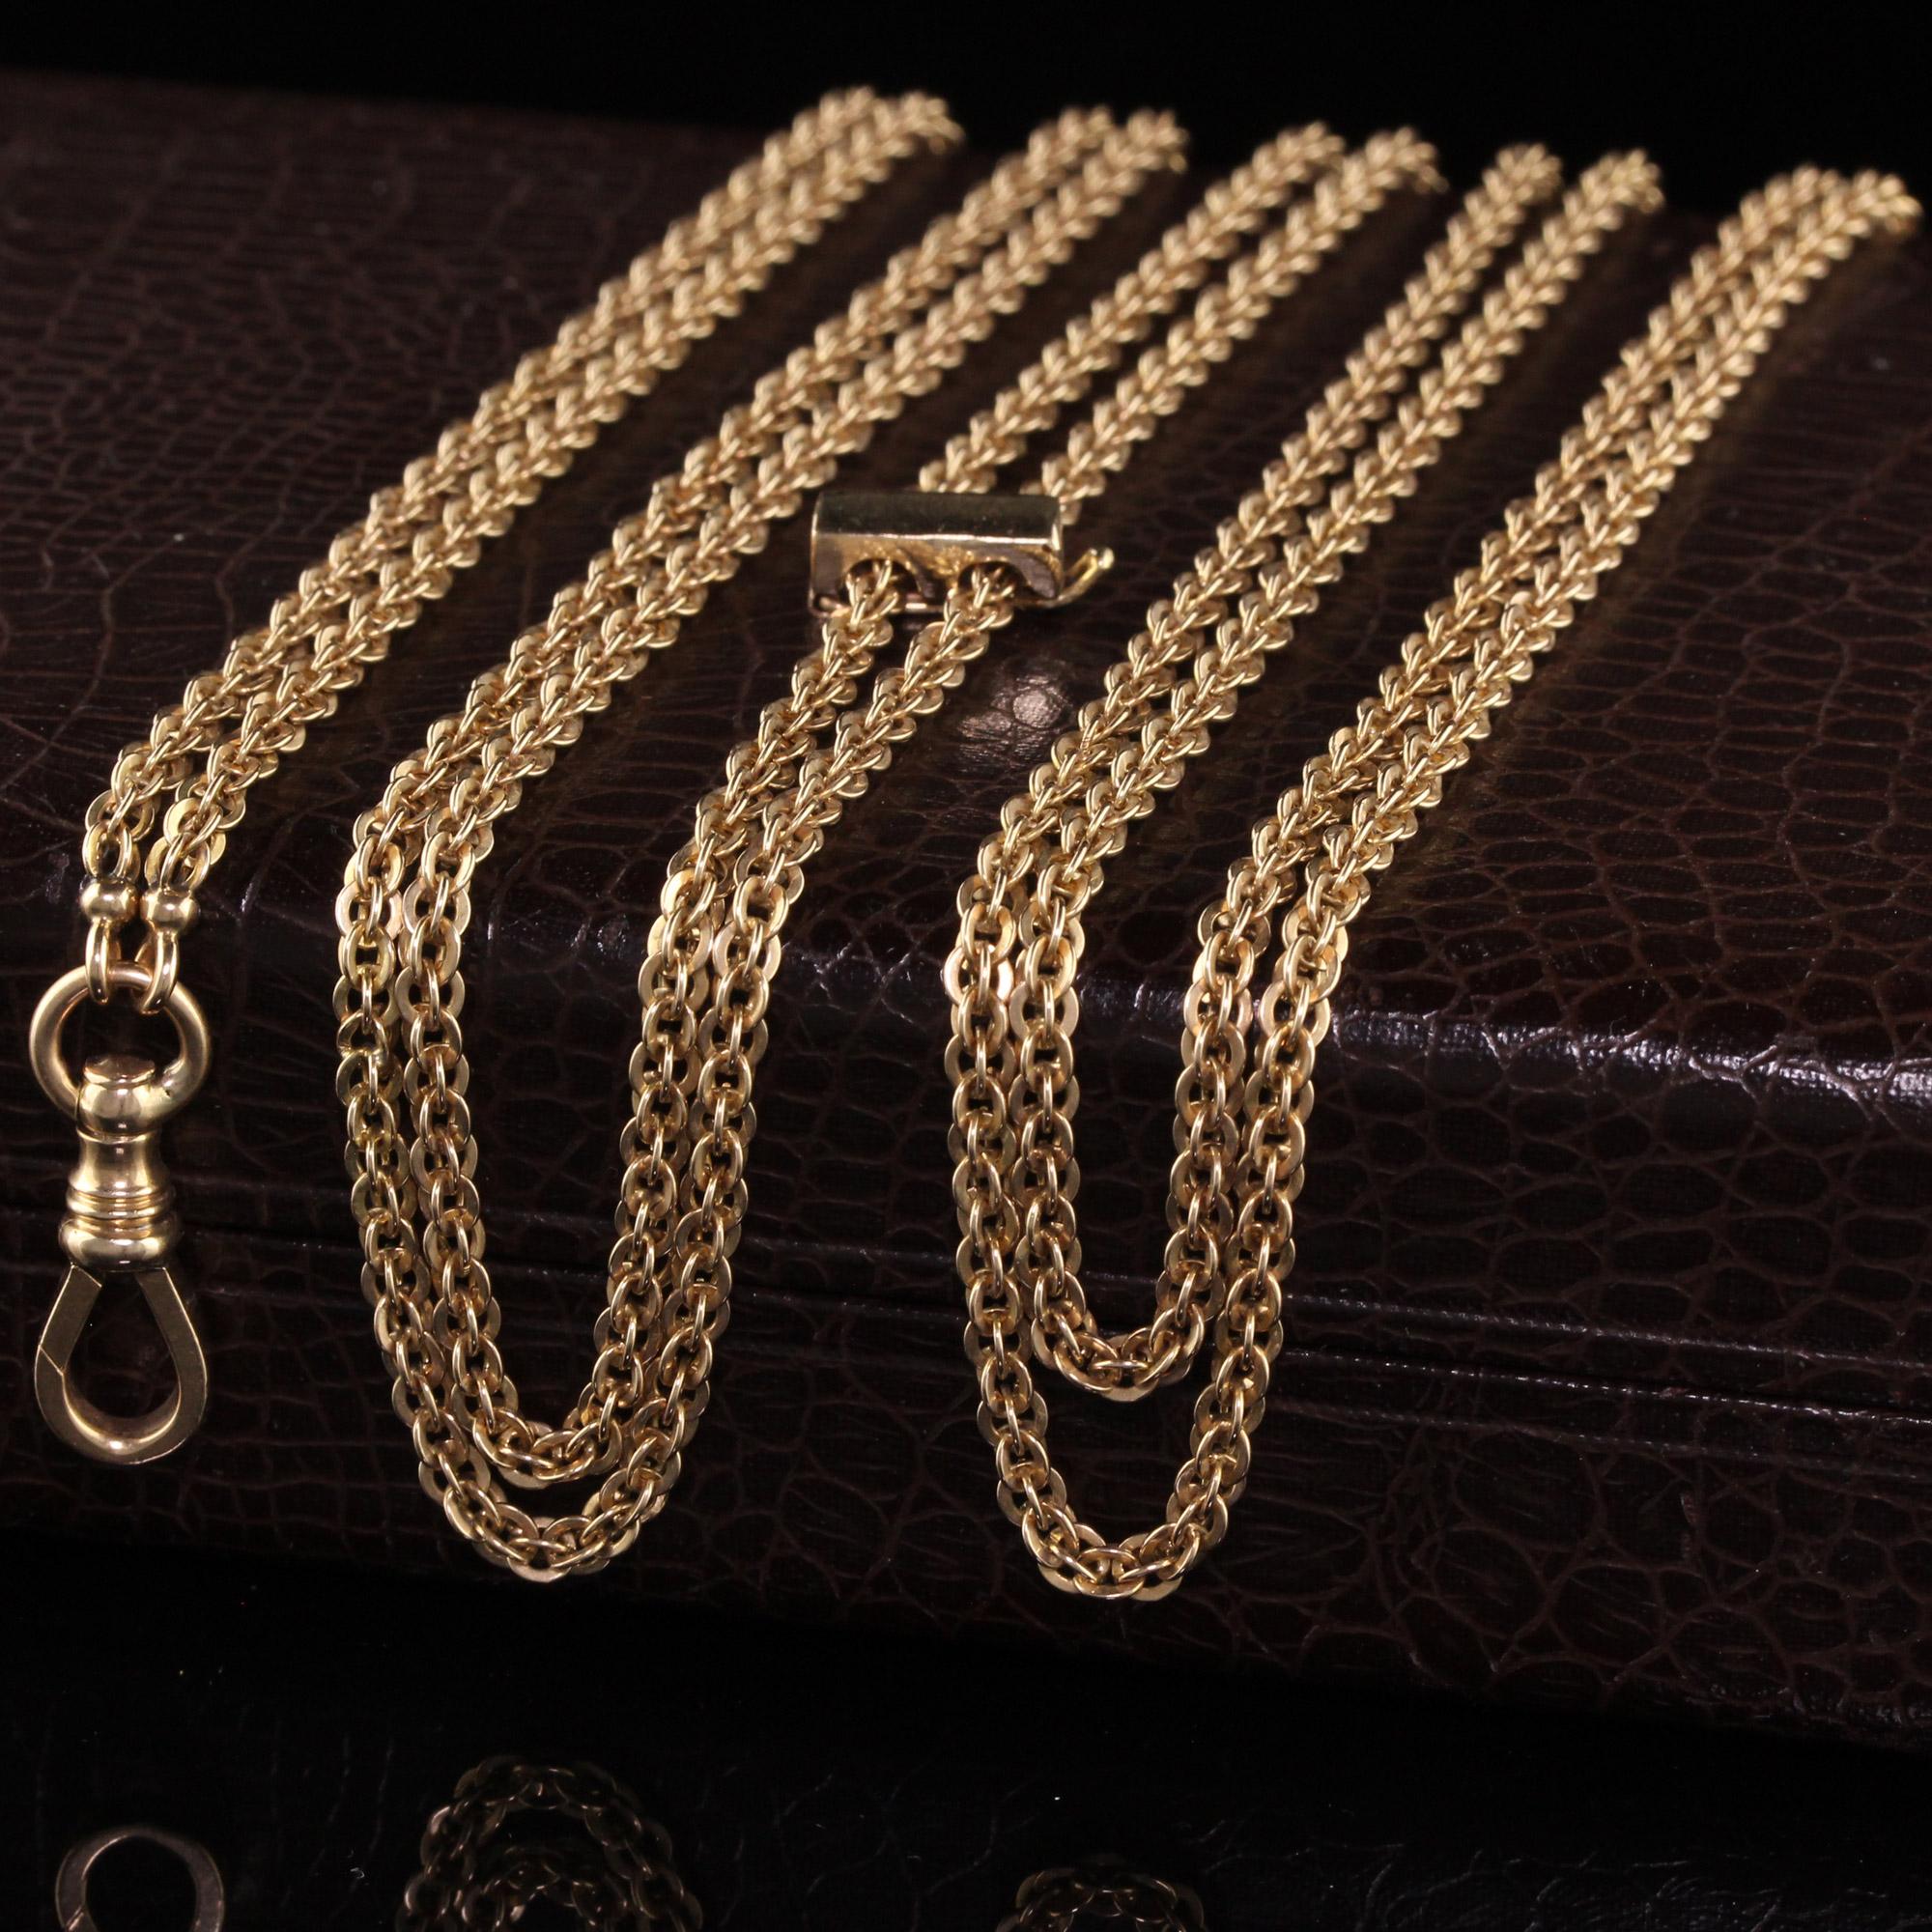 Schöne antike viktorianische 14K Gelbgold Kabel Link Kette Halskette - 67 Zoll. Diese schöne Kabelkette ist aus 14k Gelbgold gefertigt. Die Halskette misst 67 Zentimeter lang und ist in gutem Zustand. Es gibt ein goldenes Stück, das an jeder